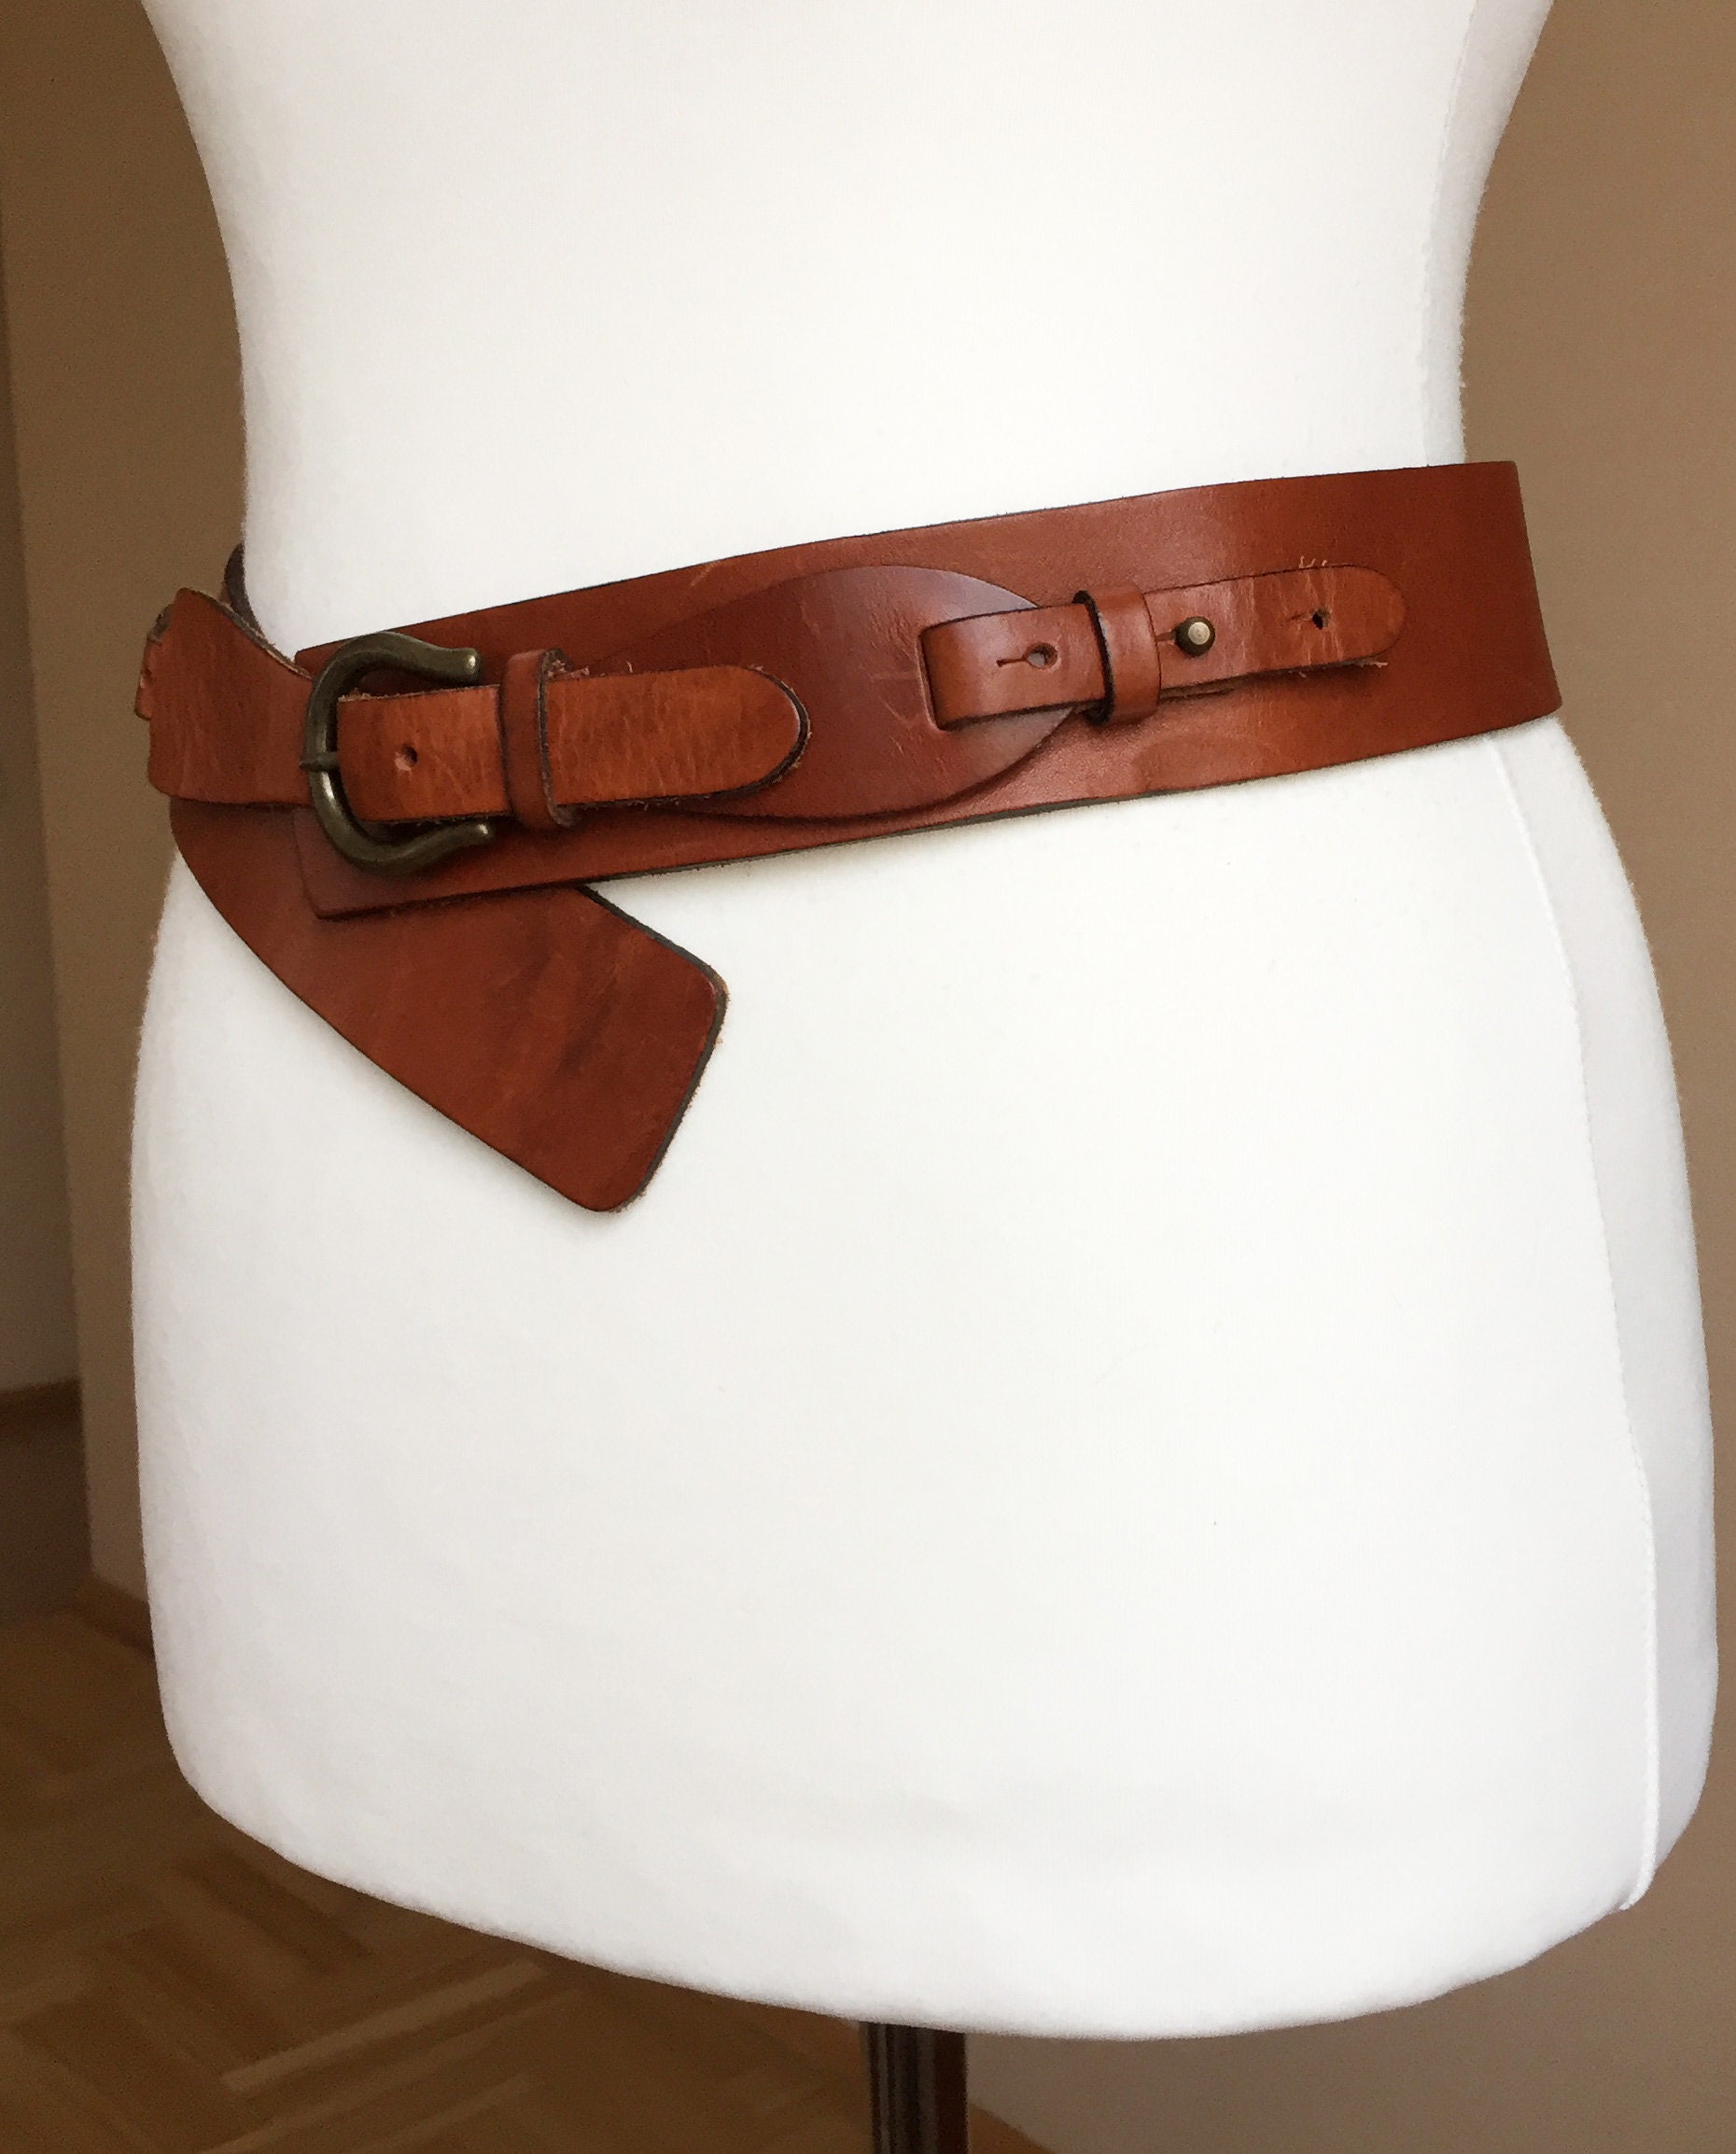 Vintage L/XL Thick Leather belt Women Wide Cognac Brown Waist | Etsy